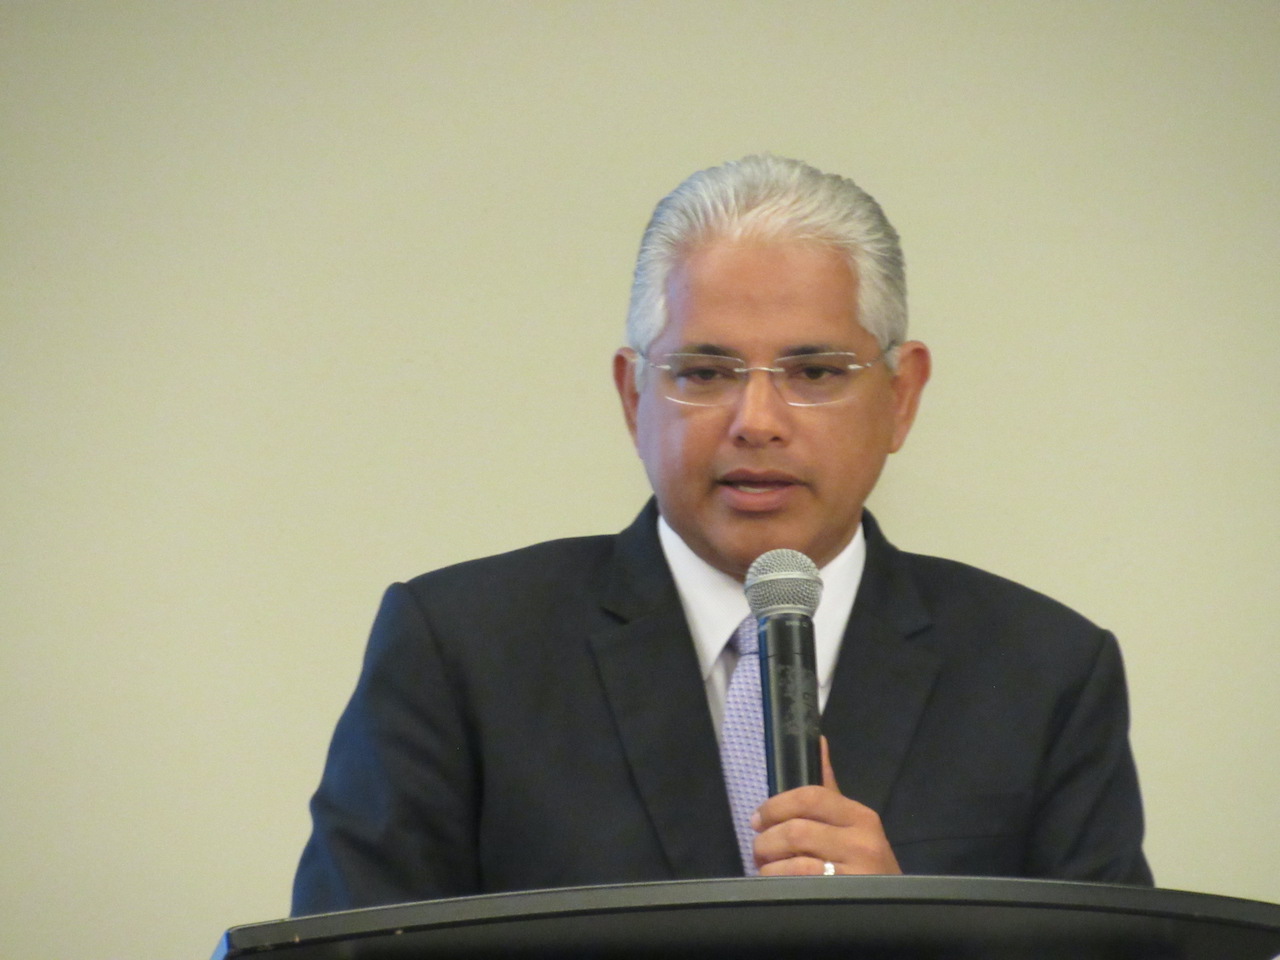 Blandón F. presentó postulación para presidente de la República en primarias Partido Panameñista